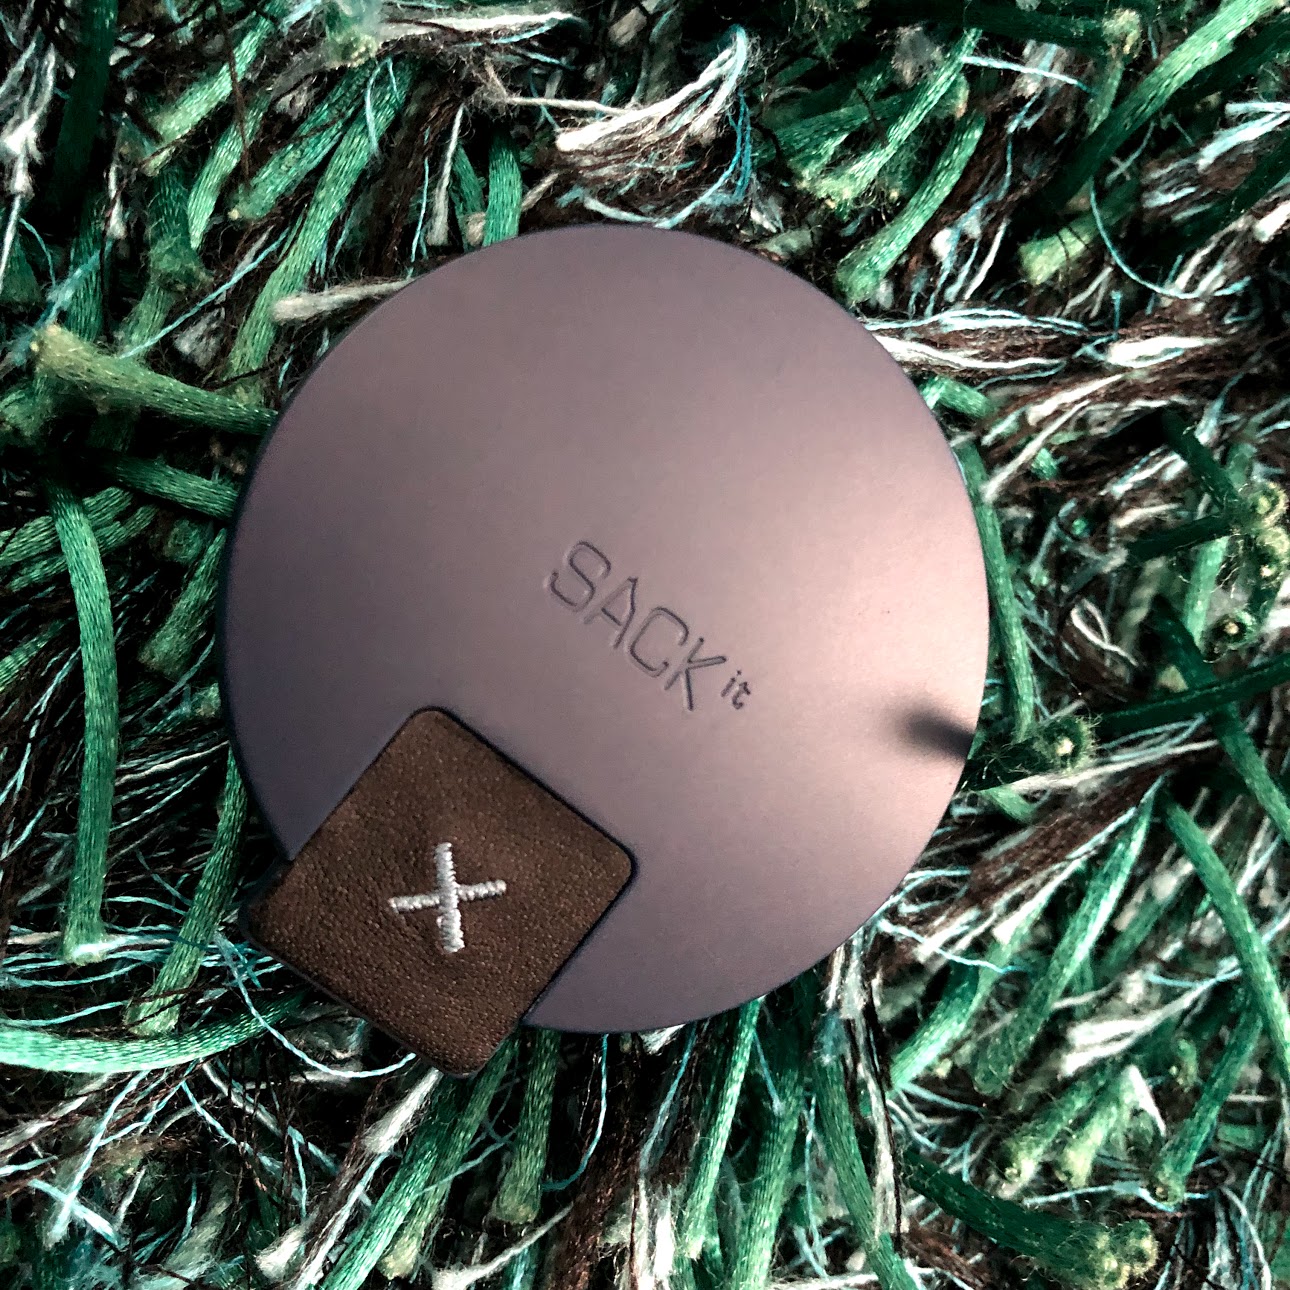 test af Sackit ROCKit headphones høretelefoner test anmeldelse af erfaring batteritid lydkvalitet